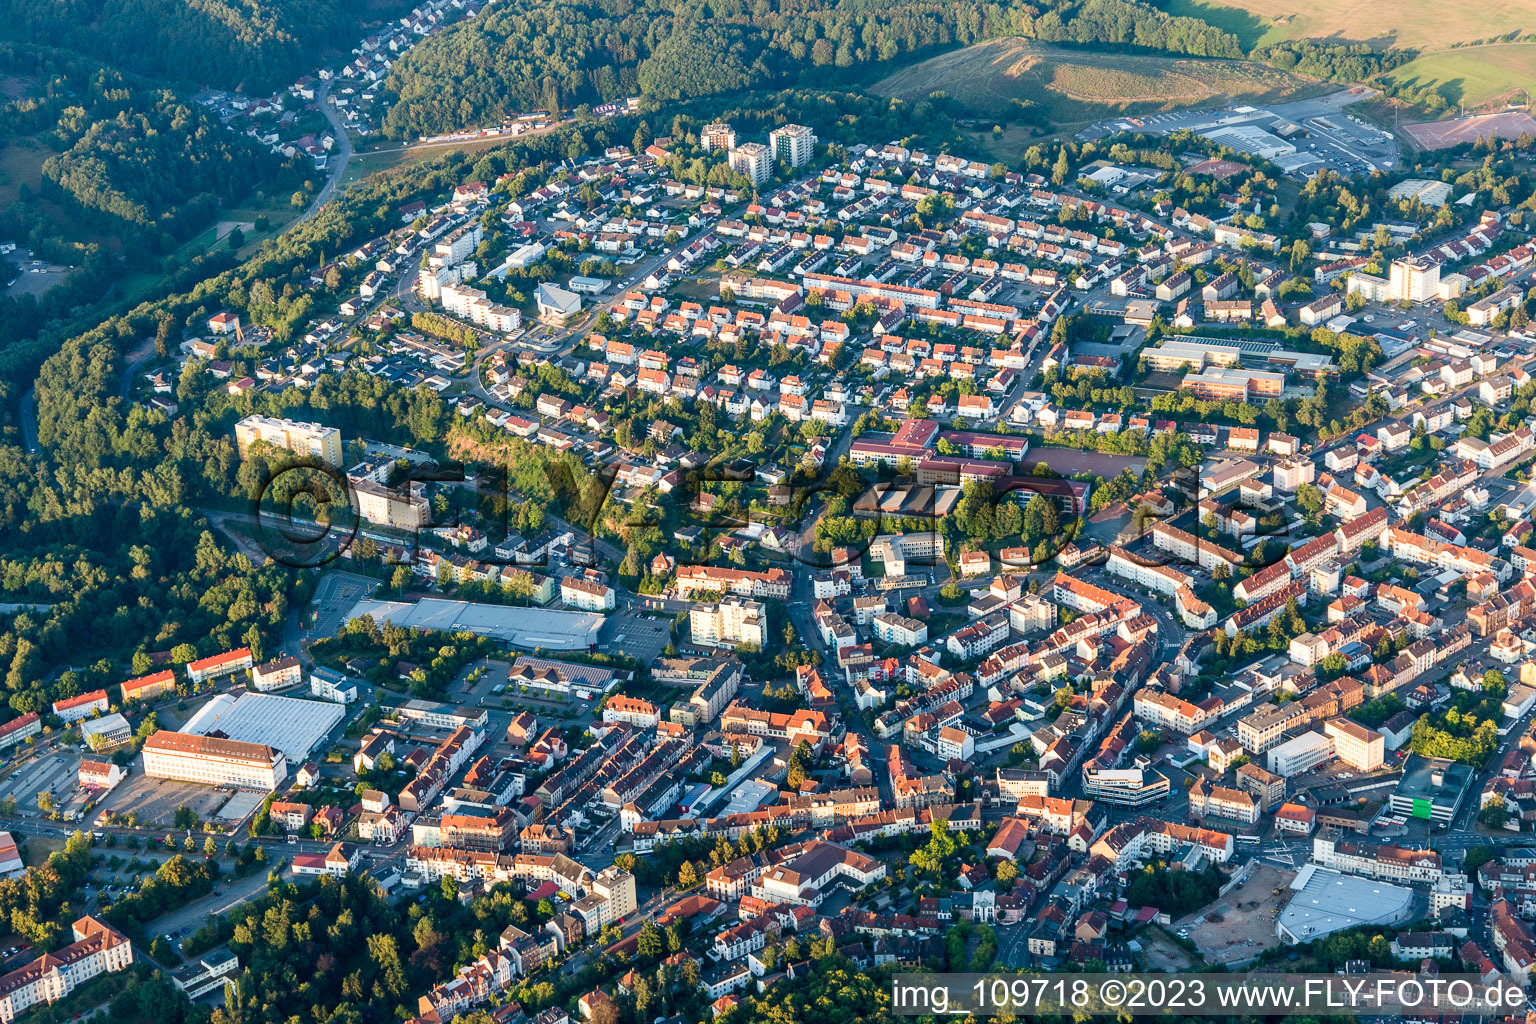 Pirmasens dans le département Rhénanie-Palatinat, Allemagne vue d'en haut